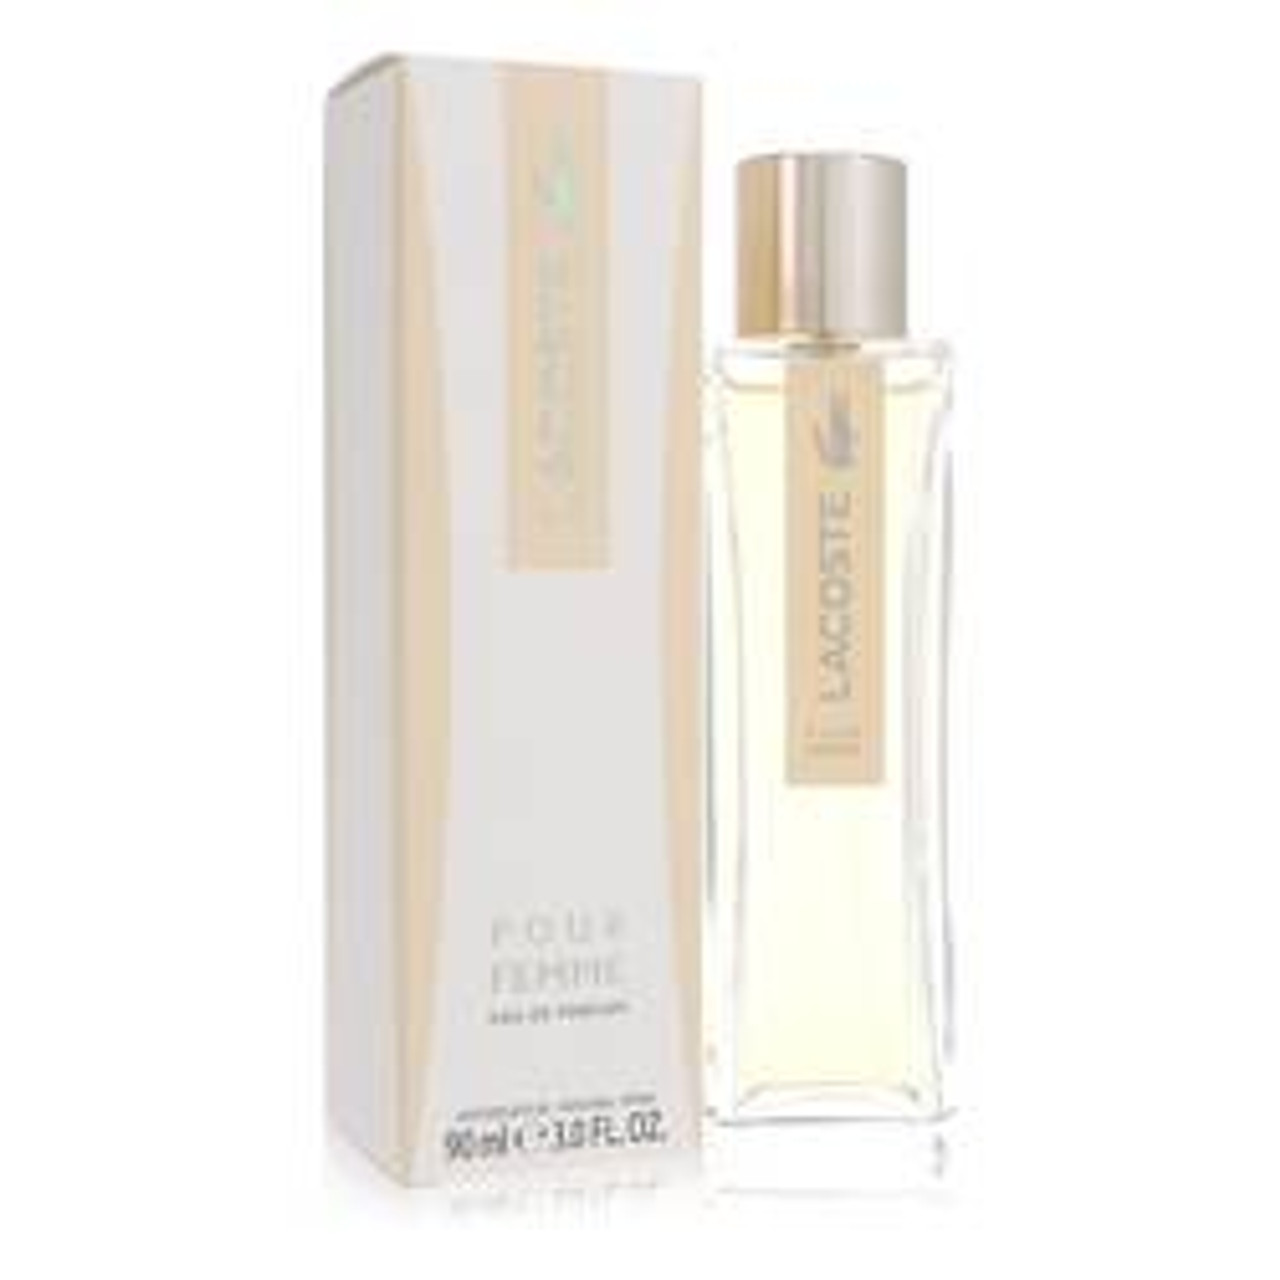 Lacoste Pour Femme Perfume By Lacoste Eau De Parfum Spray 3 oz for Women - *Pre-Order